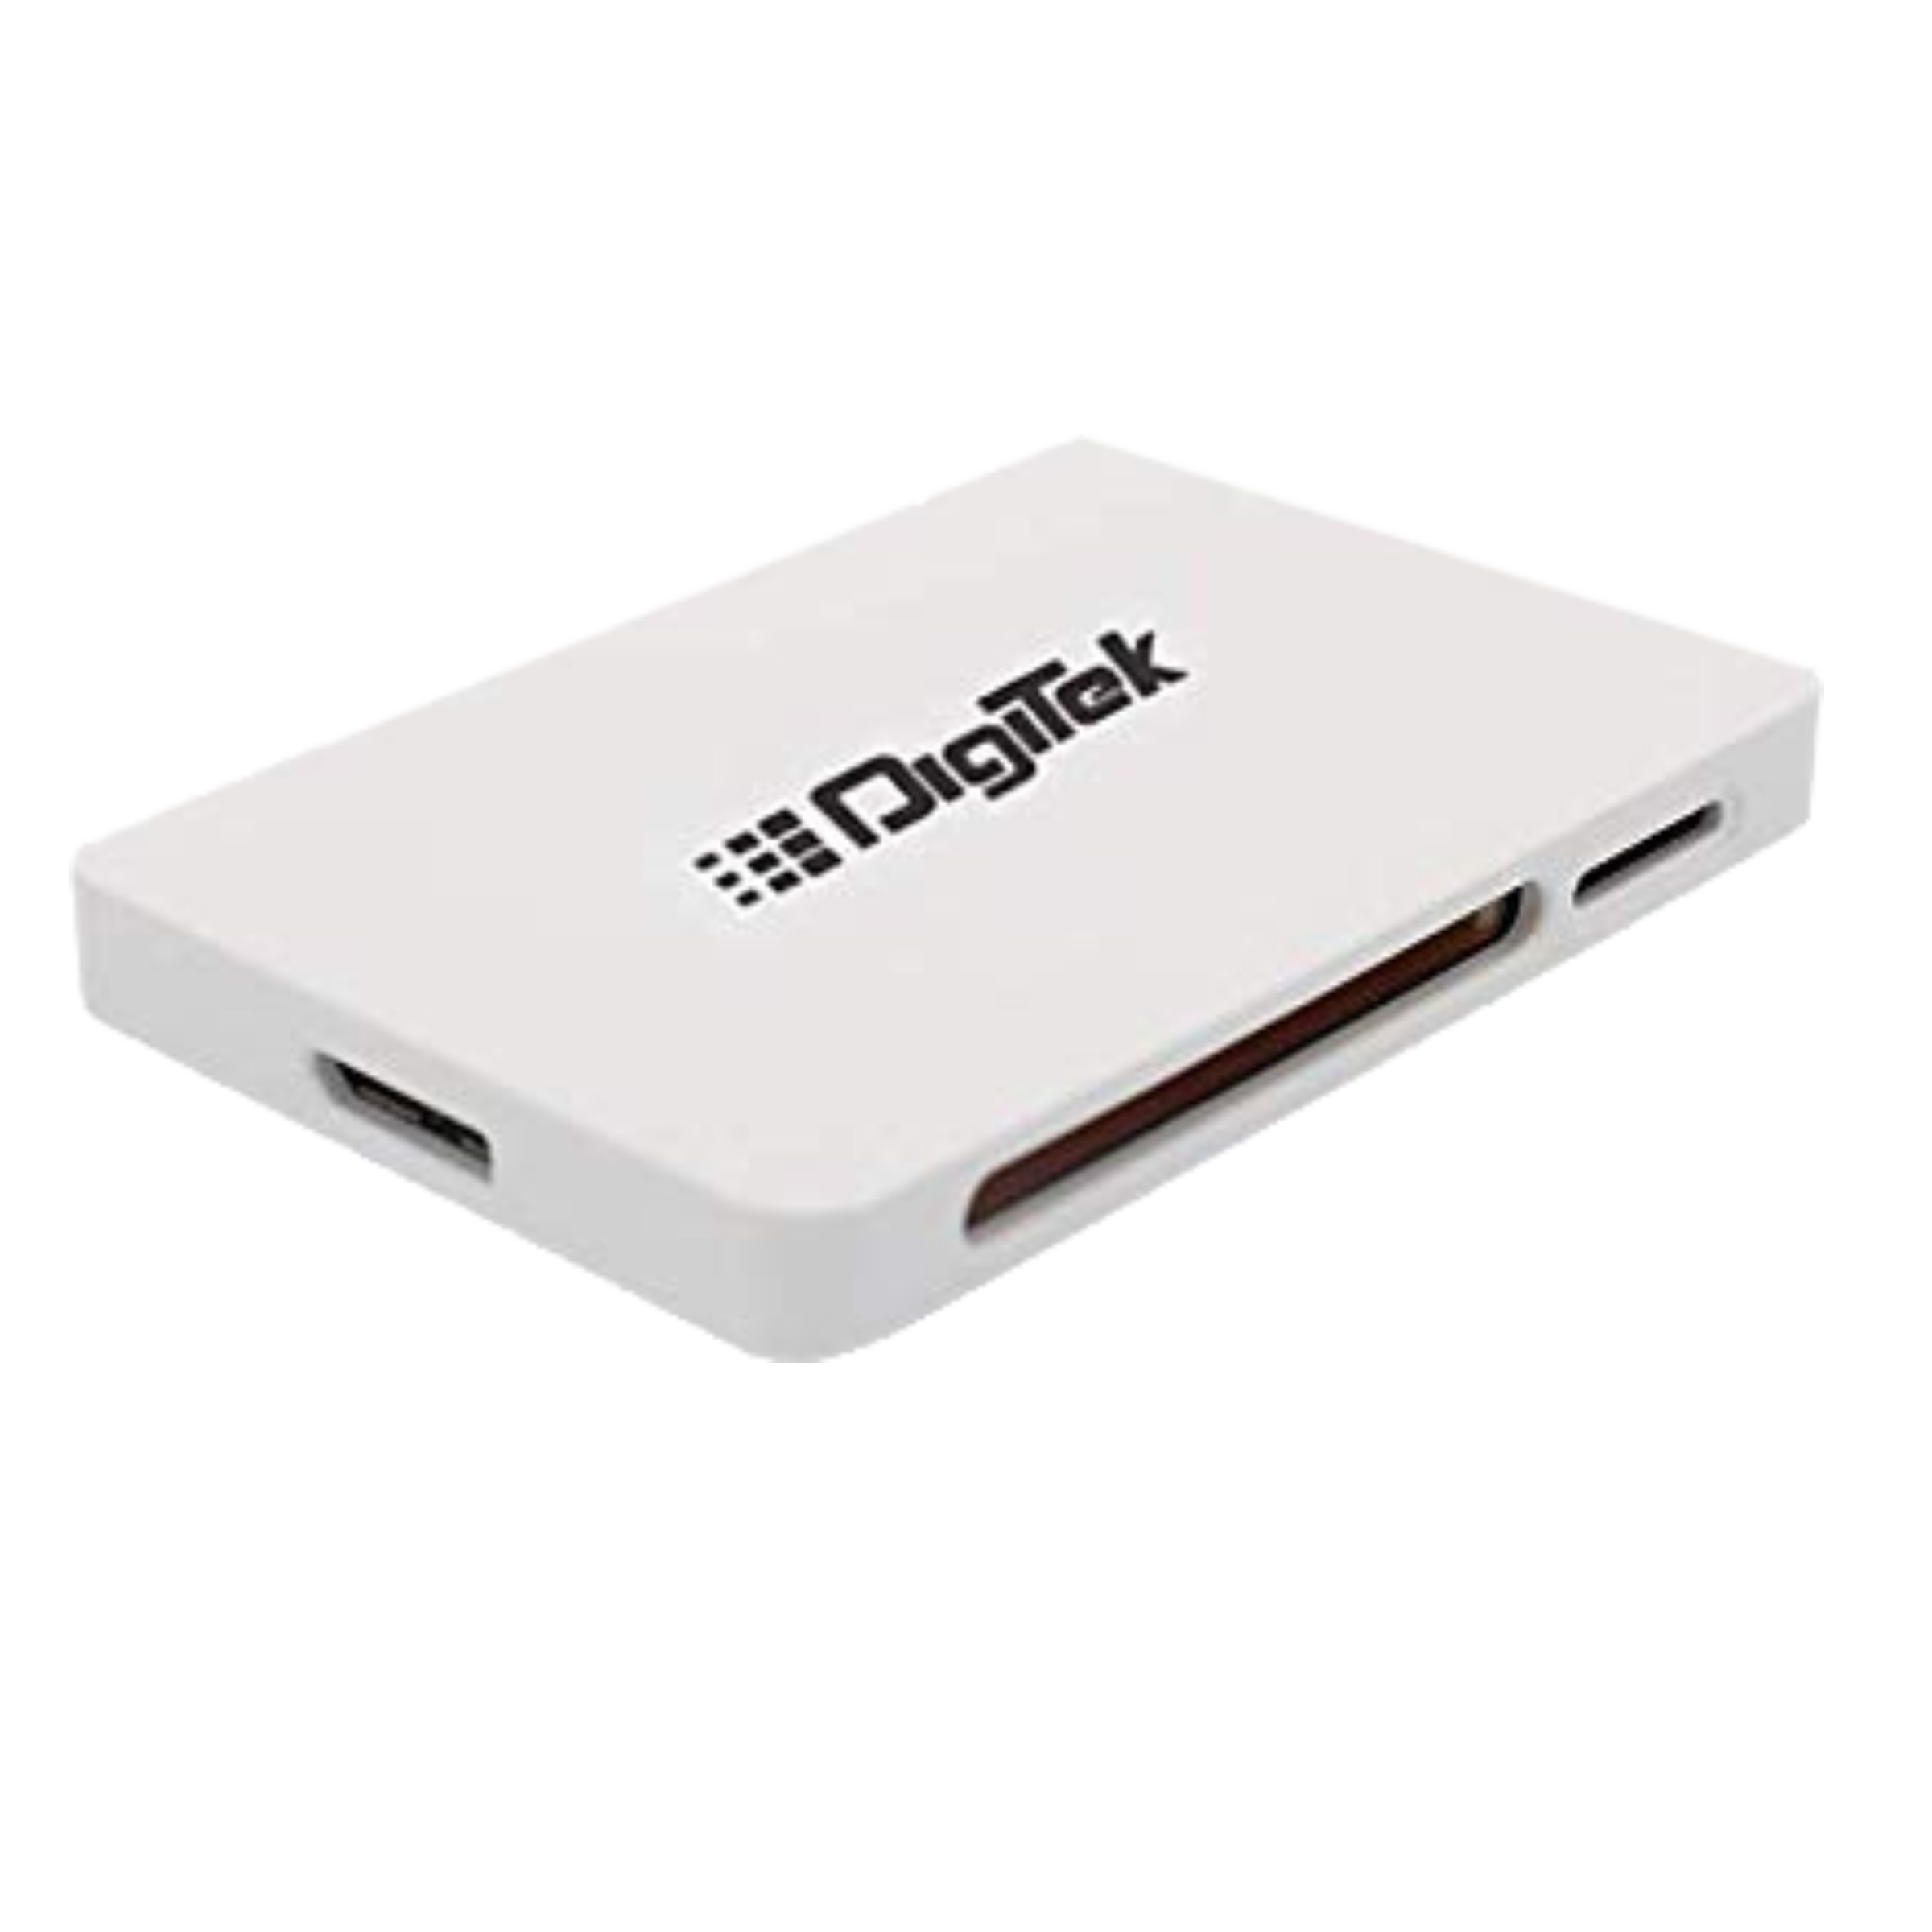 Digitek DCR 022 USB 3.0 Card Reader (Transfer Speed Up To 5Gbps, B00BM2FELK, White)_1